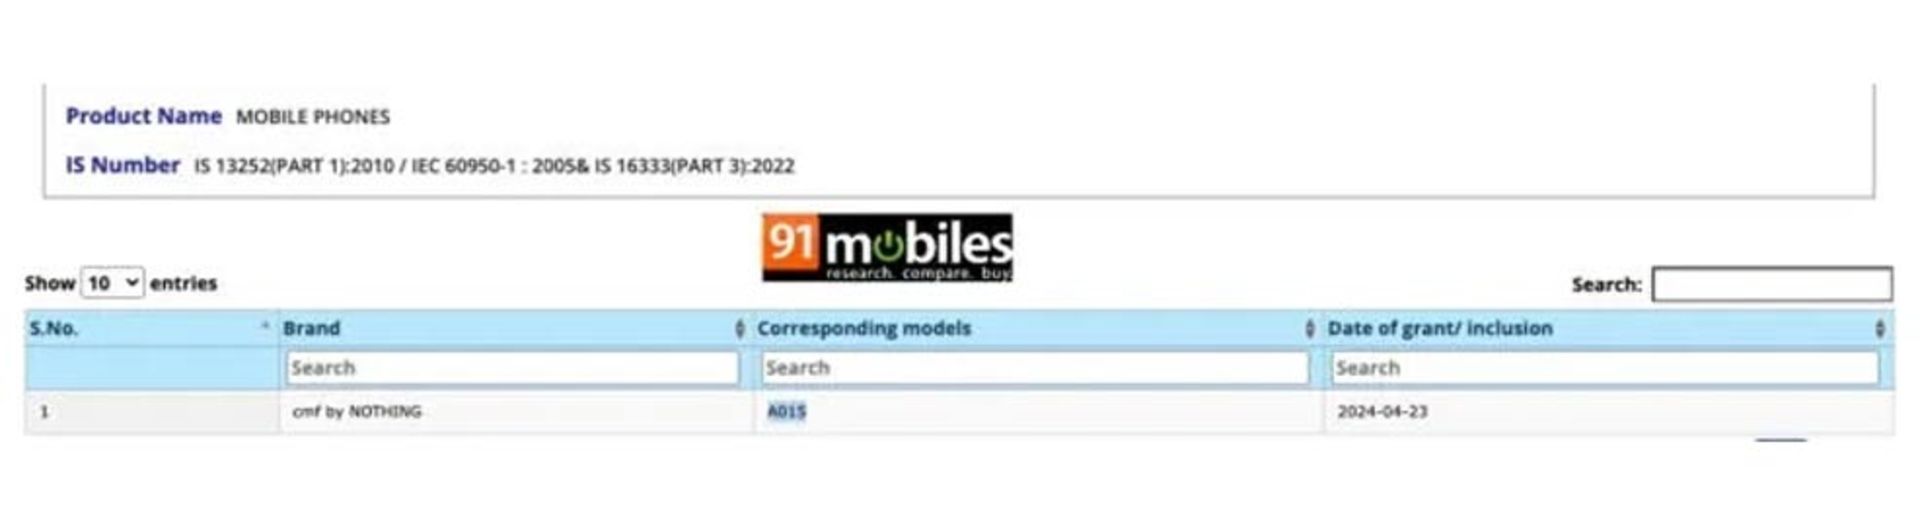 گوشی ناتینگ CMF با شماره مدل A015 در سایت گواهی BIS 